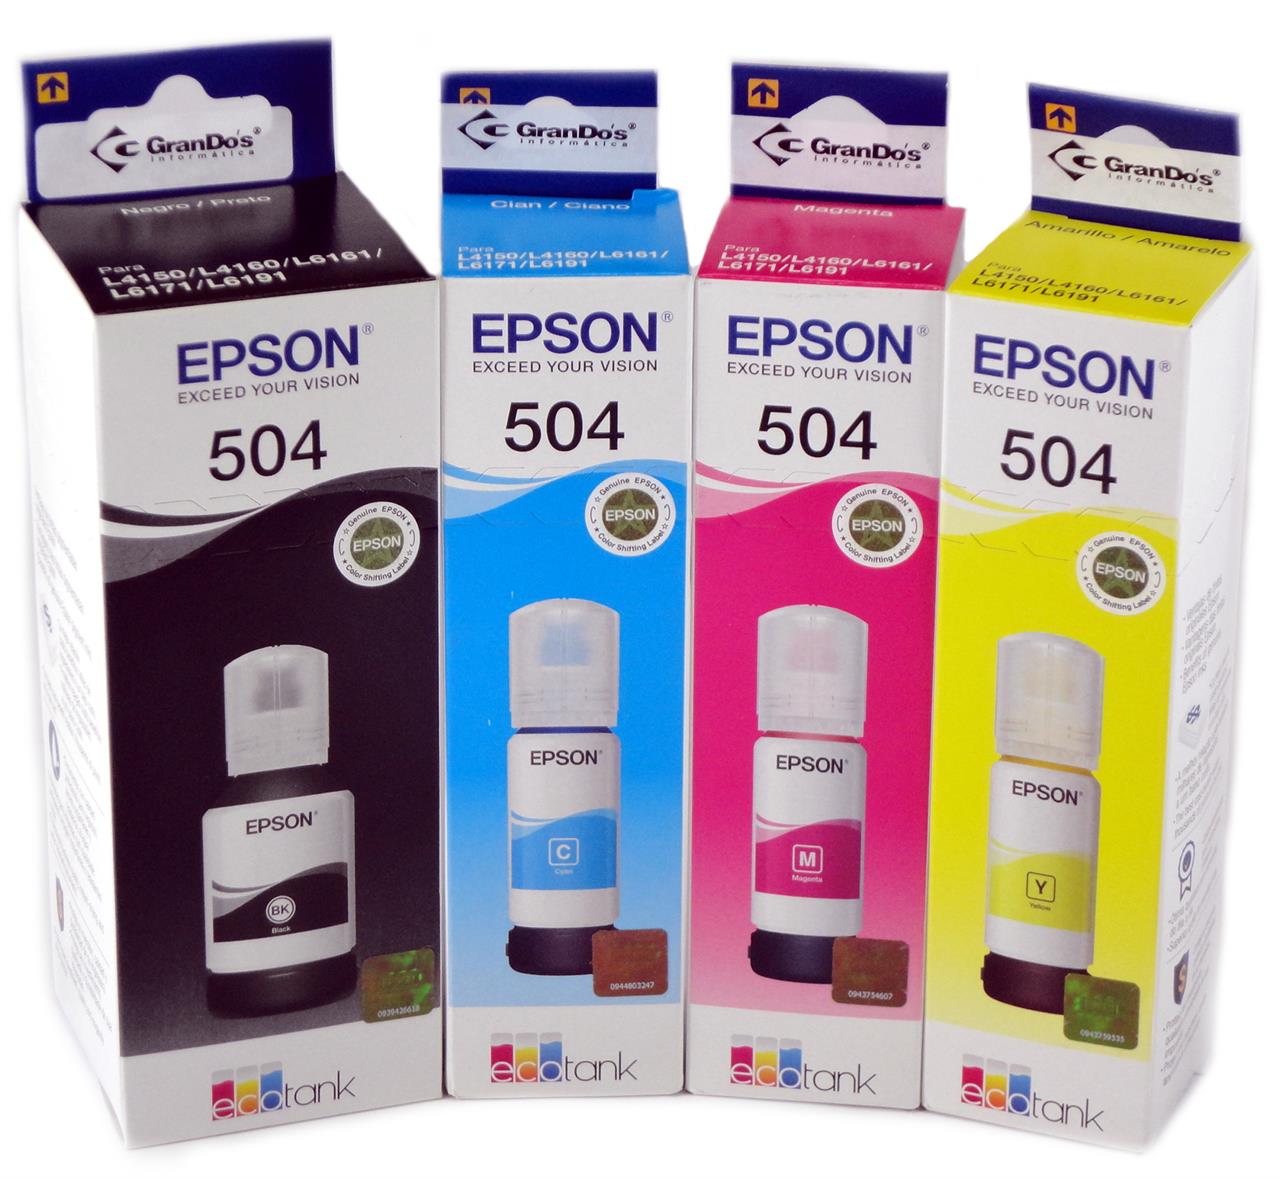 Kit de Refil de Tinta Original Epson 504 em Pack com as 4 Cores